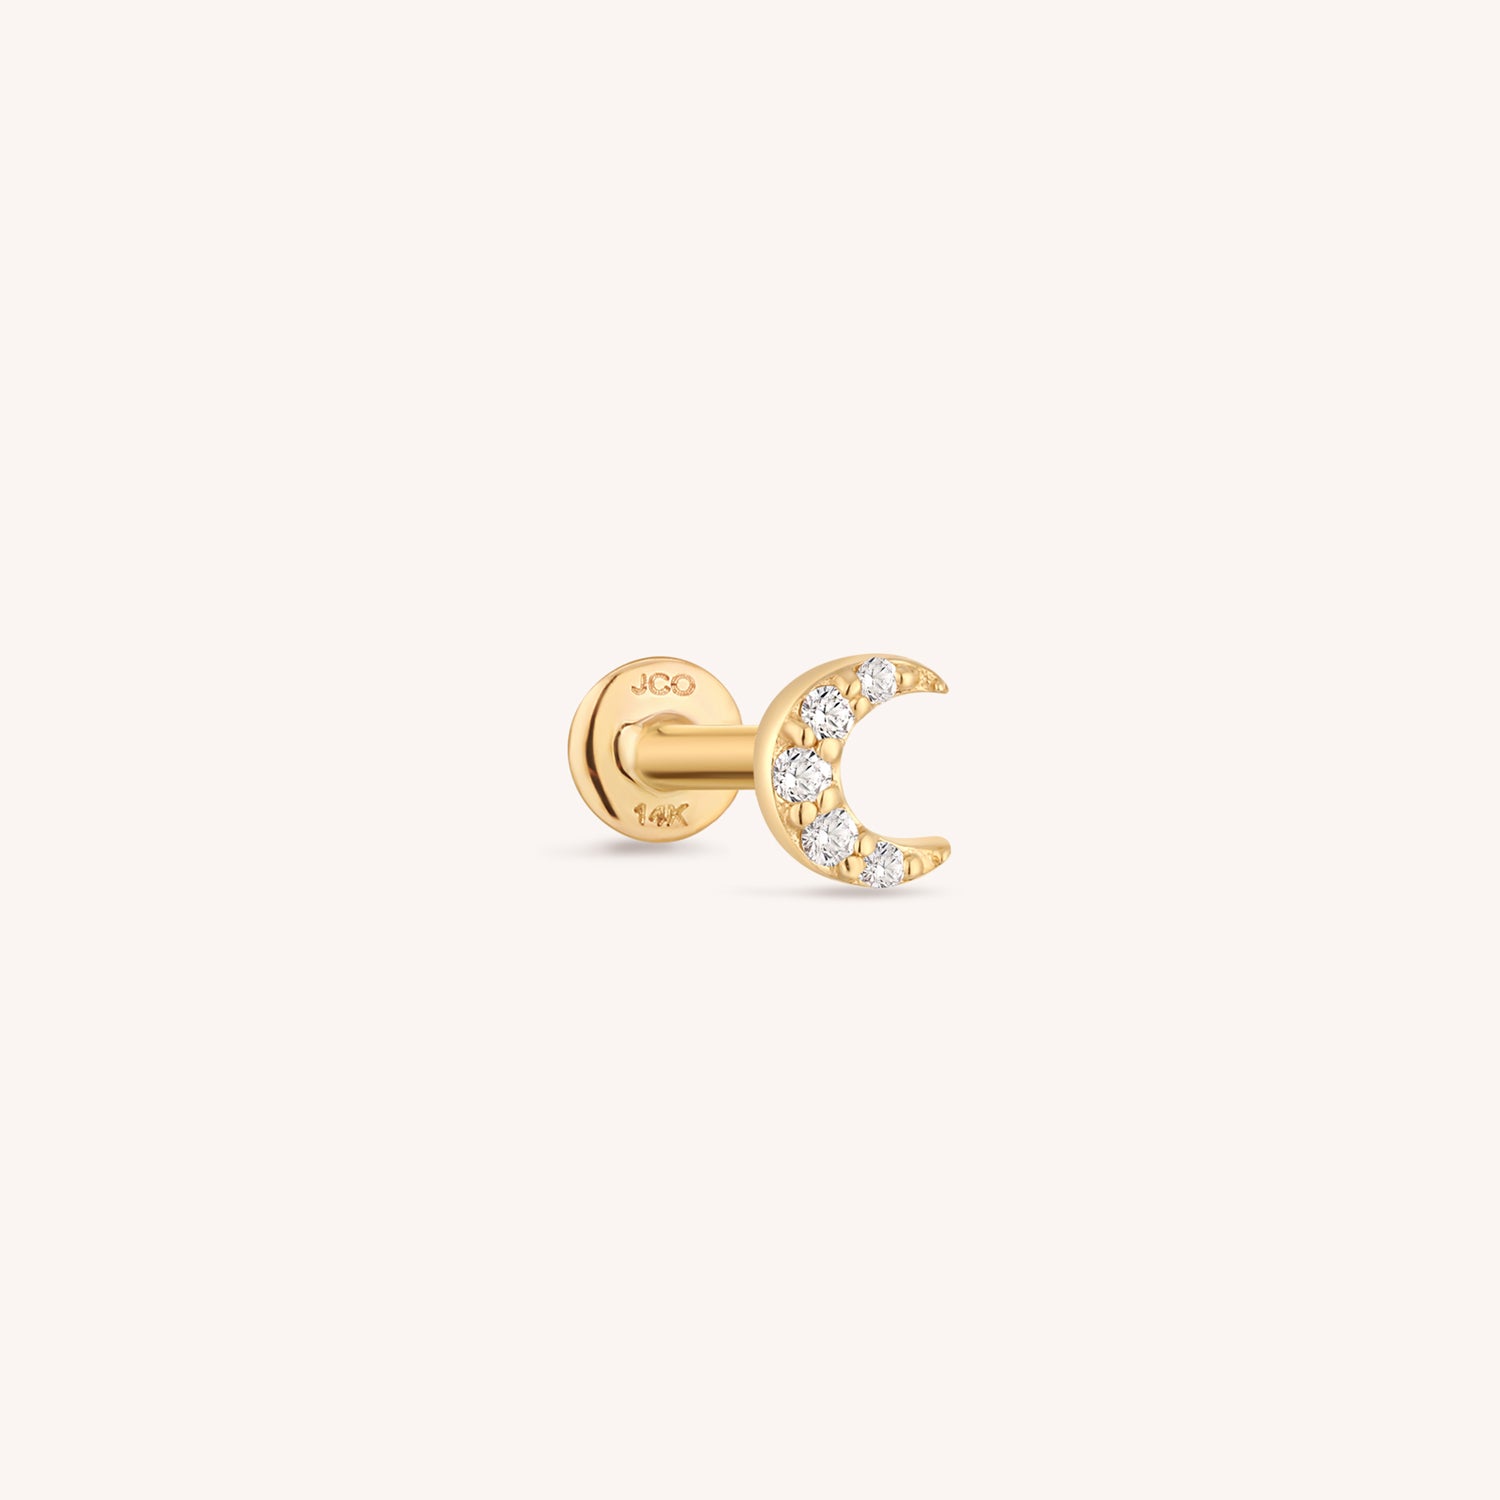 J&CO Jewellery 14K Solid Gold Mini Star Ring US 9 US 9